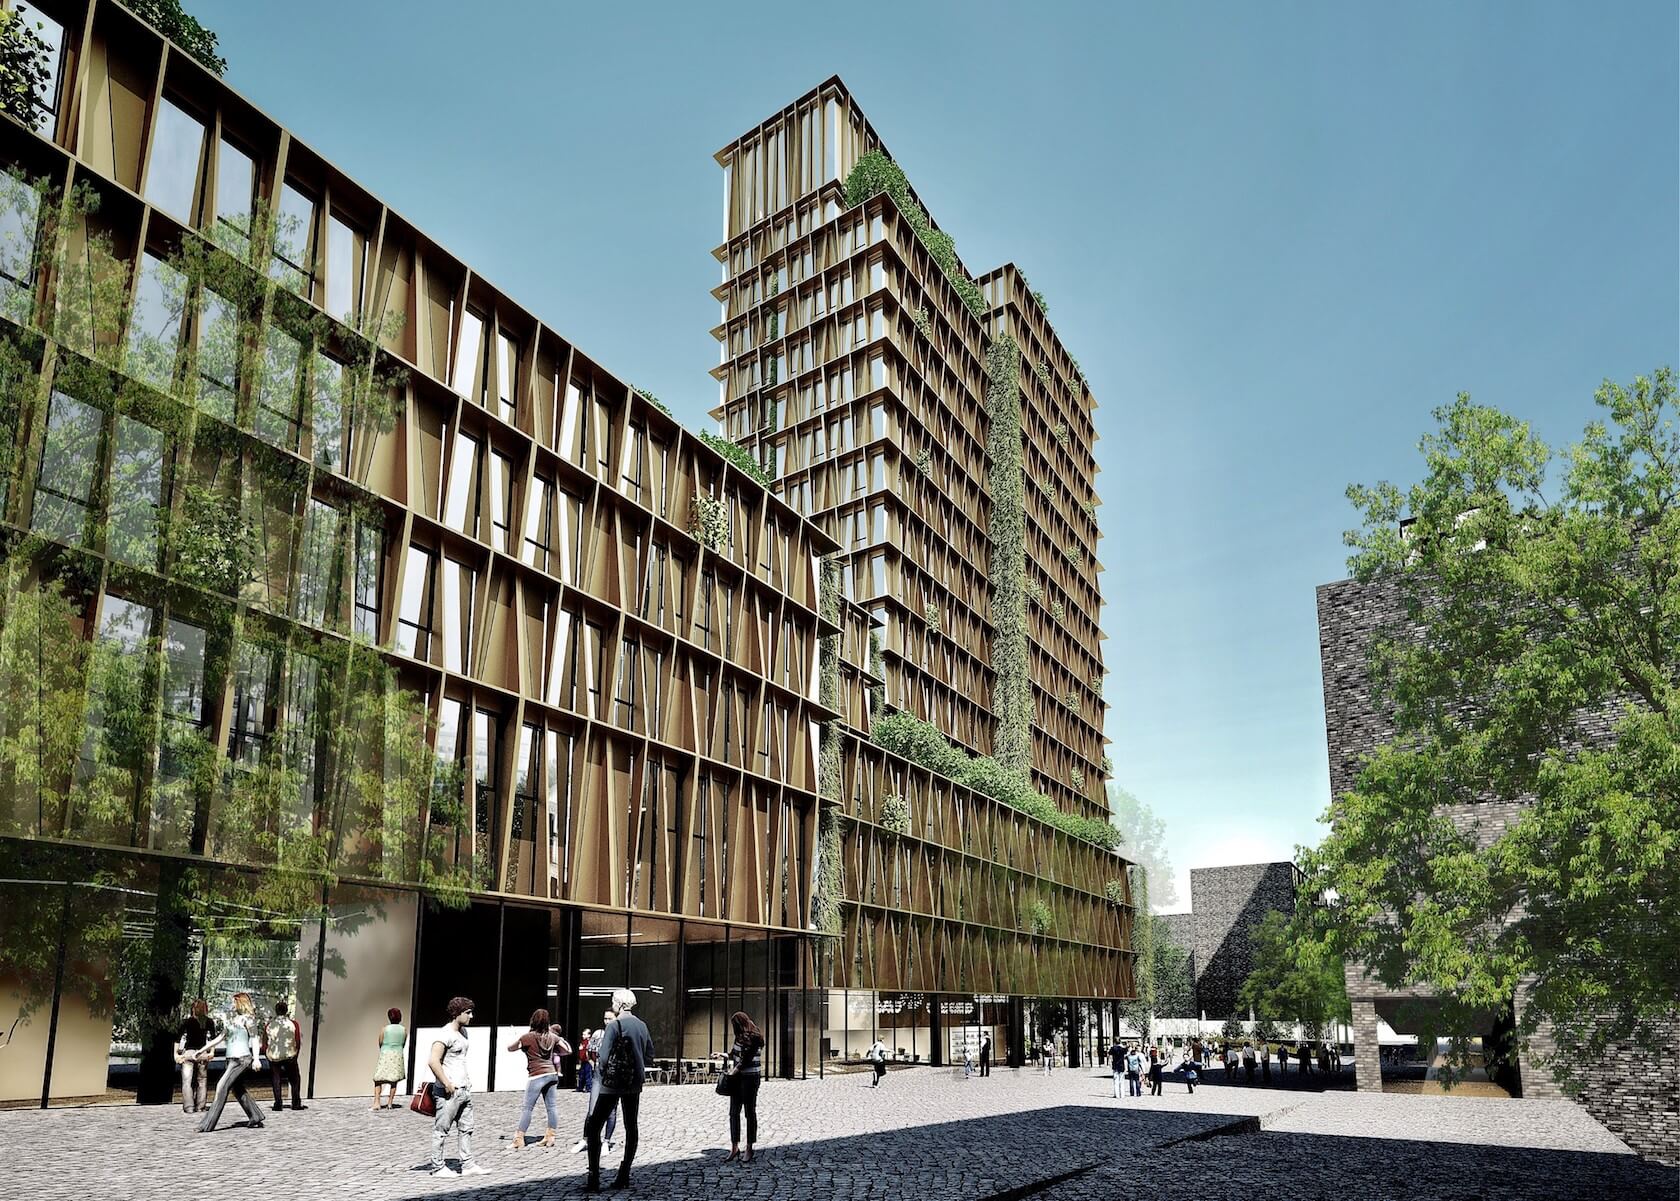 Basecamp Student Real Estates studieboligprojekt i Aarhus fordelt på 17 etager. Illustration: Lars Gitz Architects